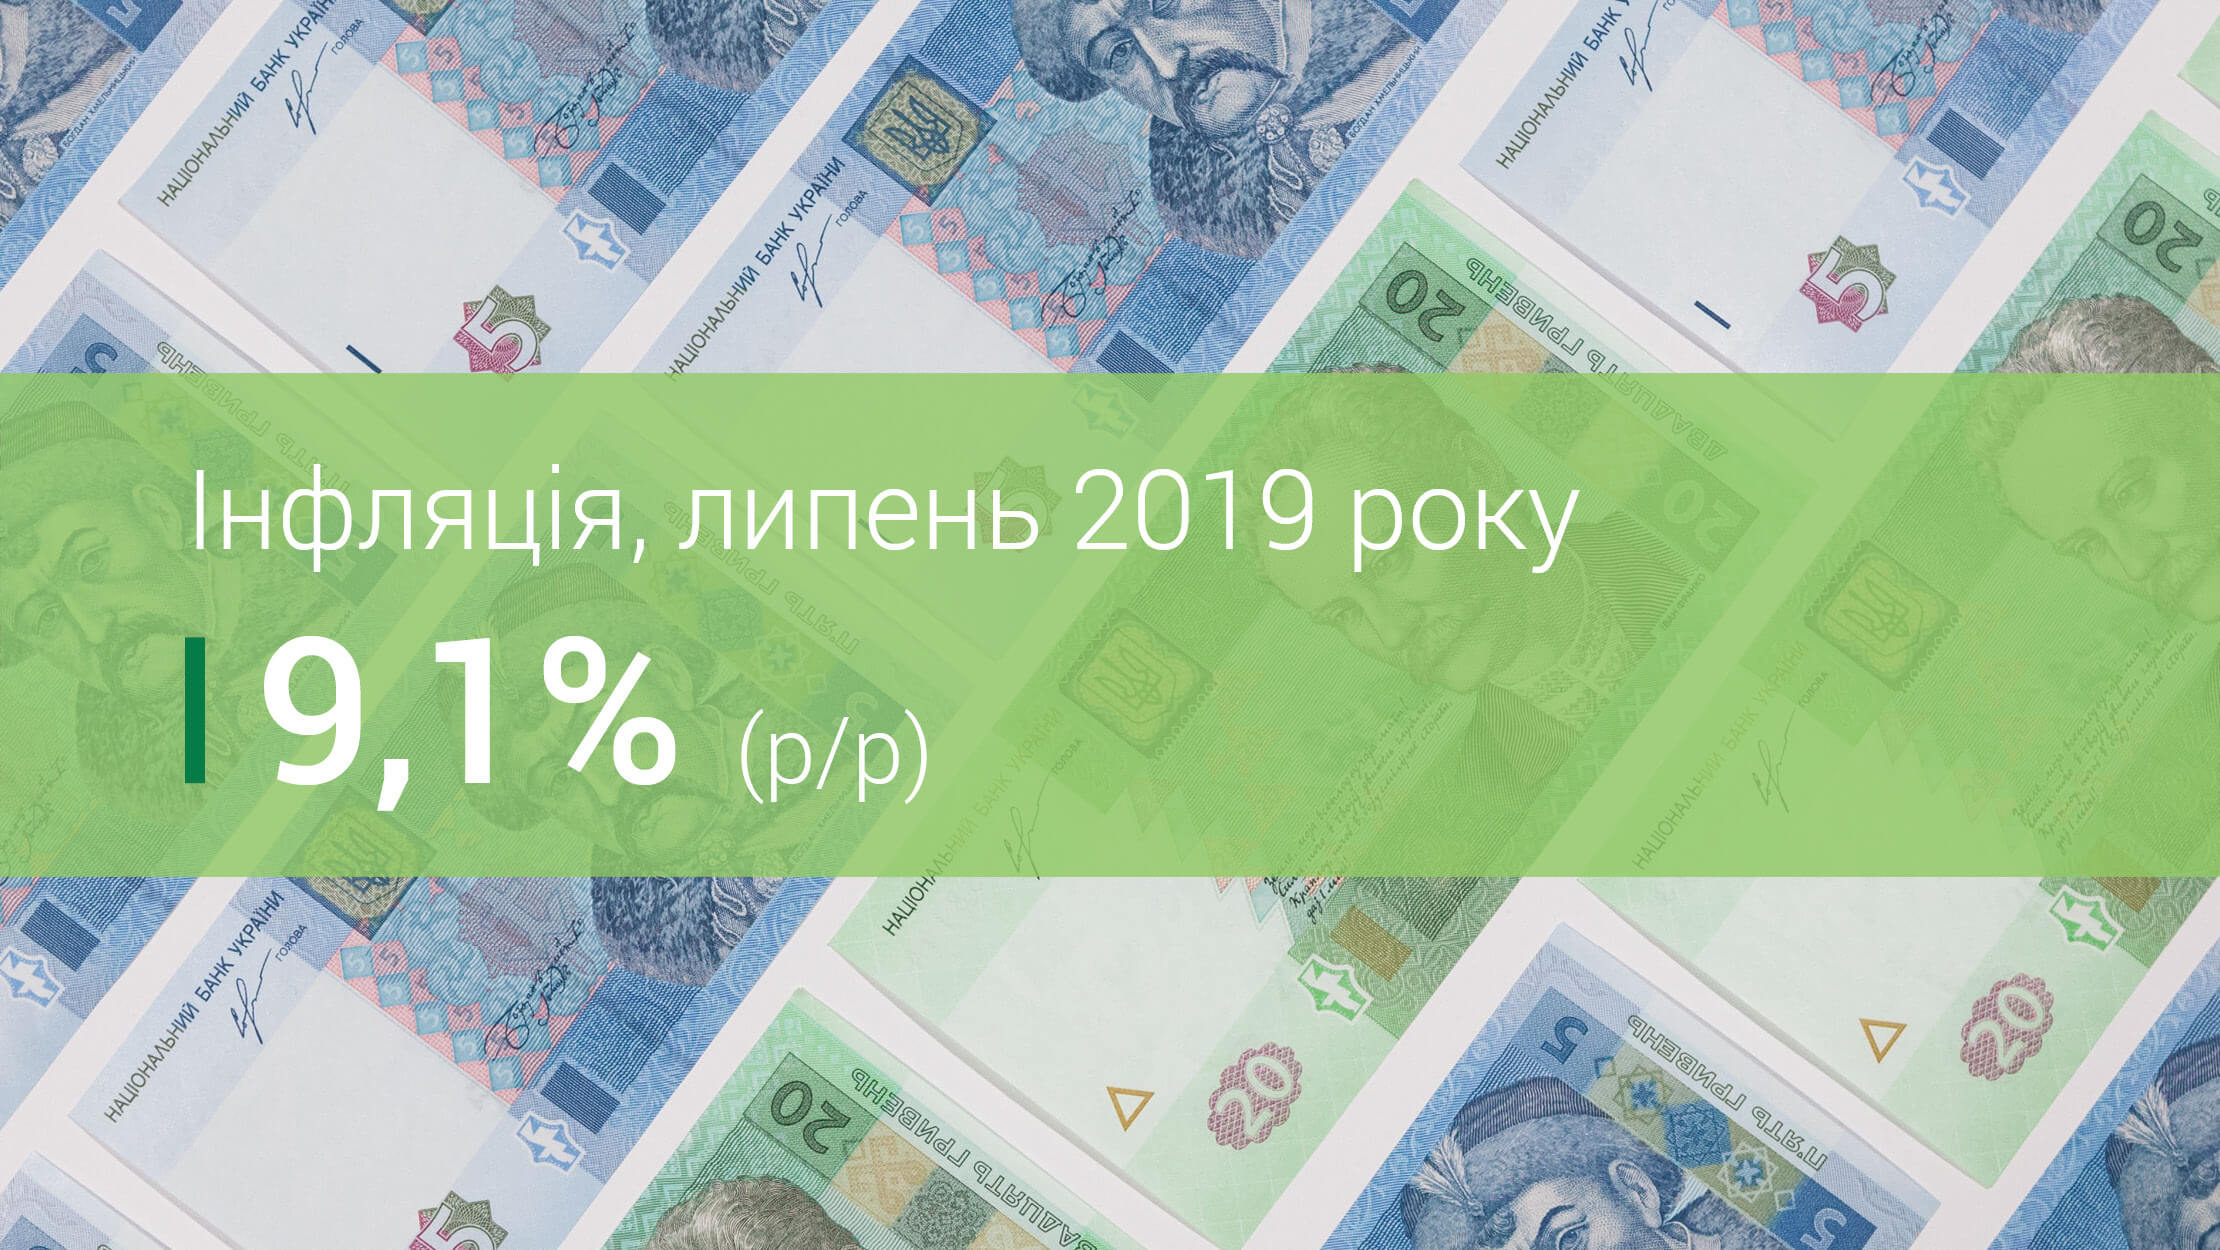 Коментар Національного банку щодо рівня інфляції у липні 2019 року